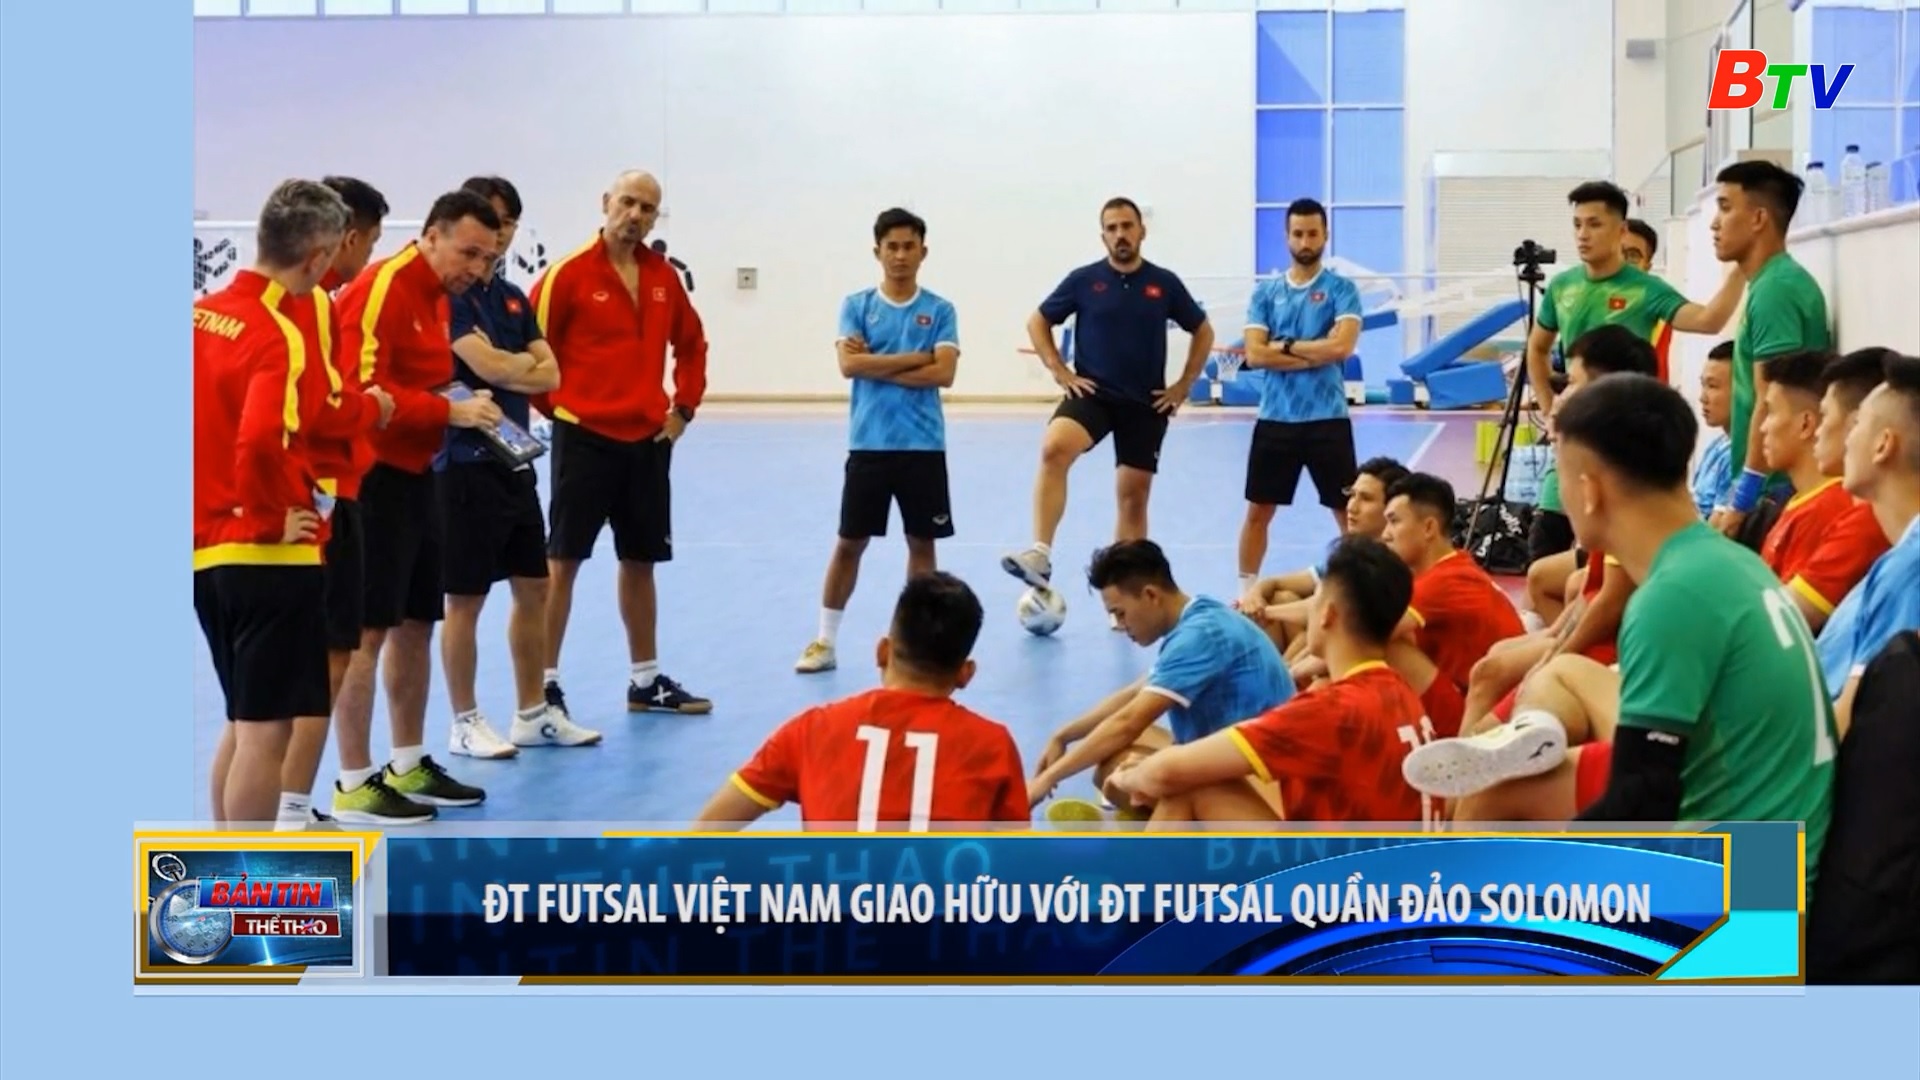 Đội tuyển Futsal Việt Nam giao hữu với ĐT Futsal quần đảo Soloman